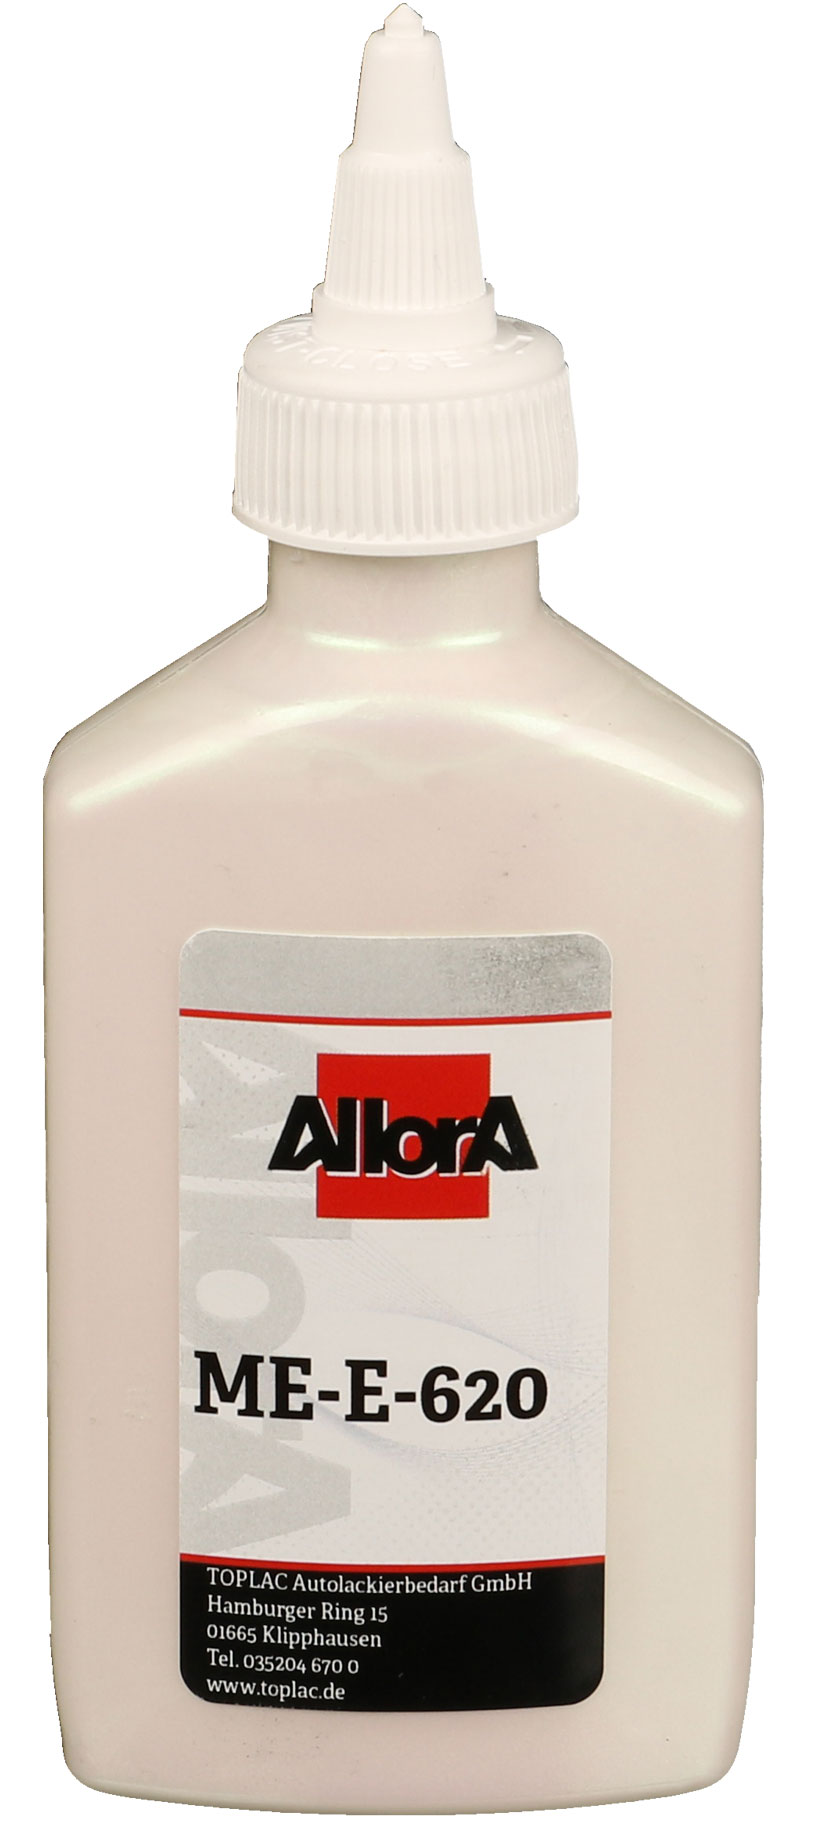 AllorA Multi-Effekt ME-E-620